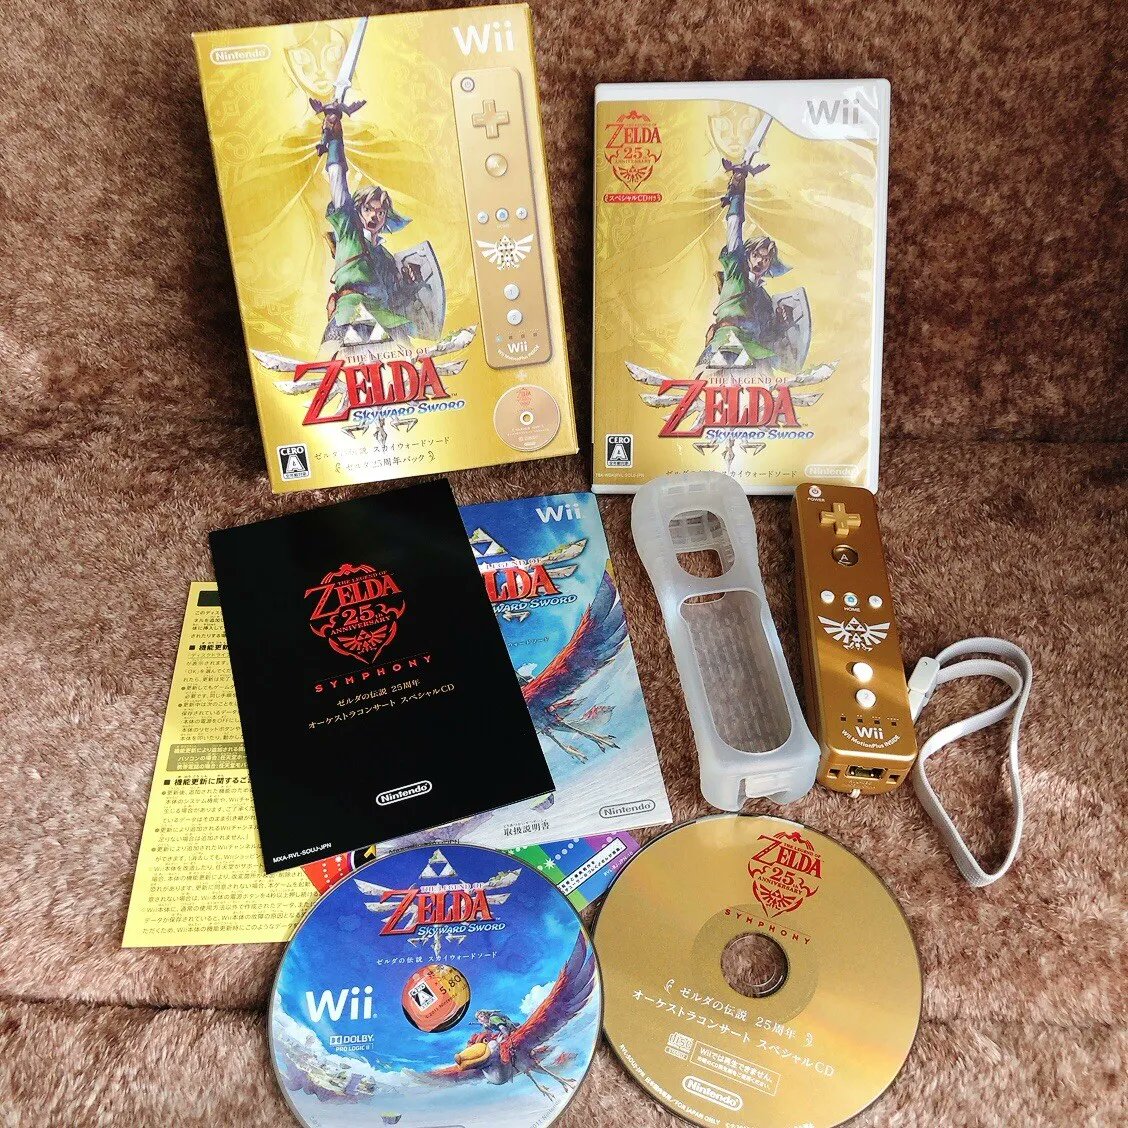 Qui avait craqué pour la collector de Zelda Skyward Sword à l'époque ?

Cette wiimote dorée magnifique avec sa capote en plastique déguelassse